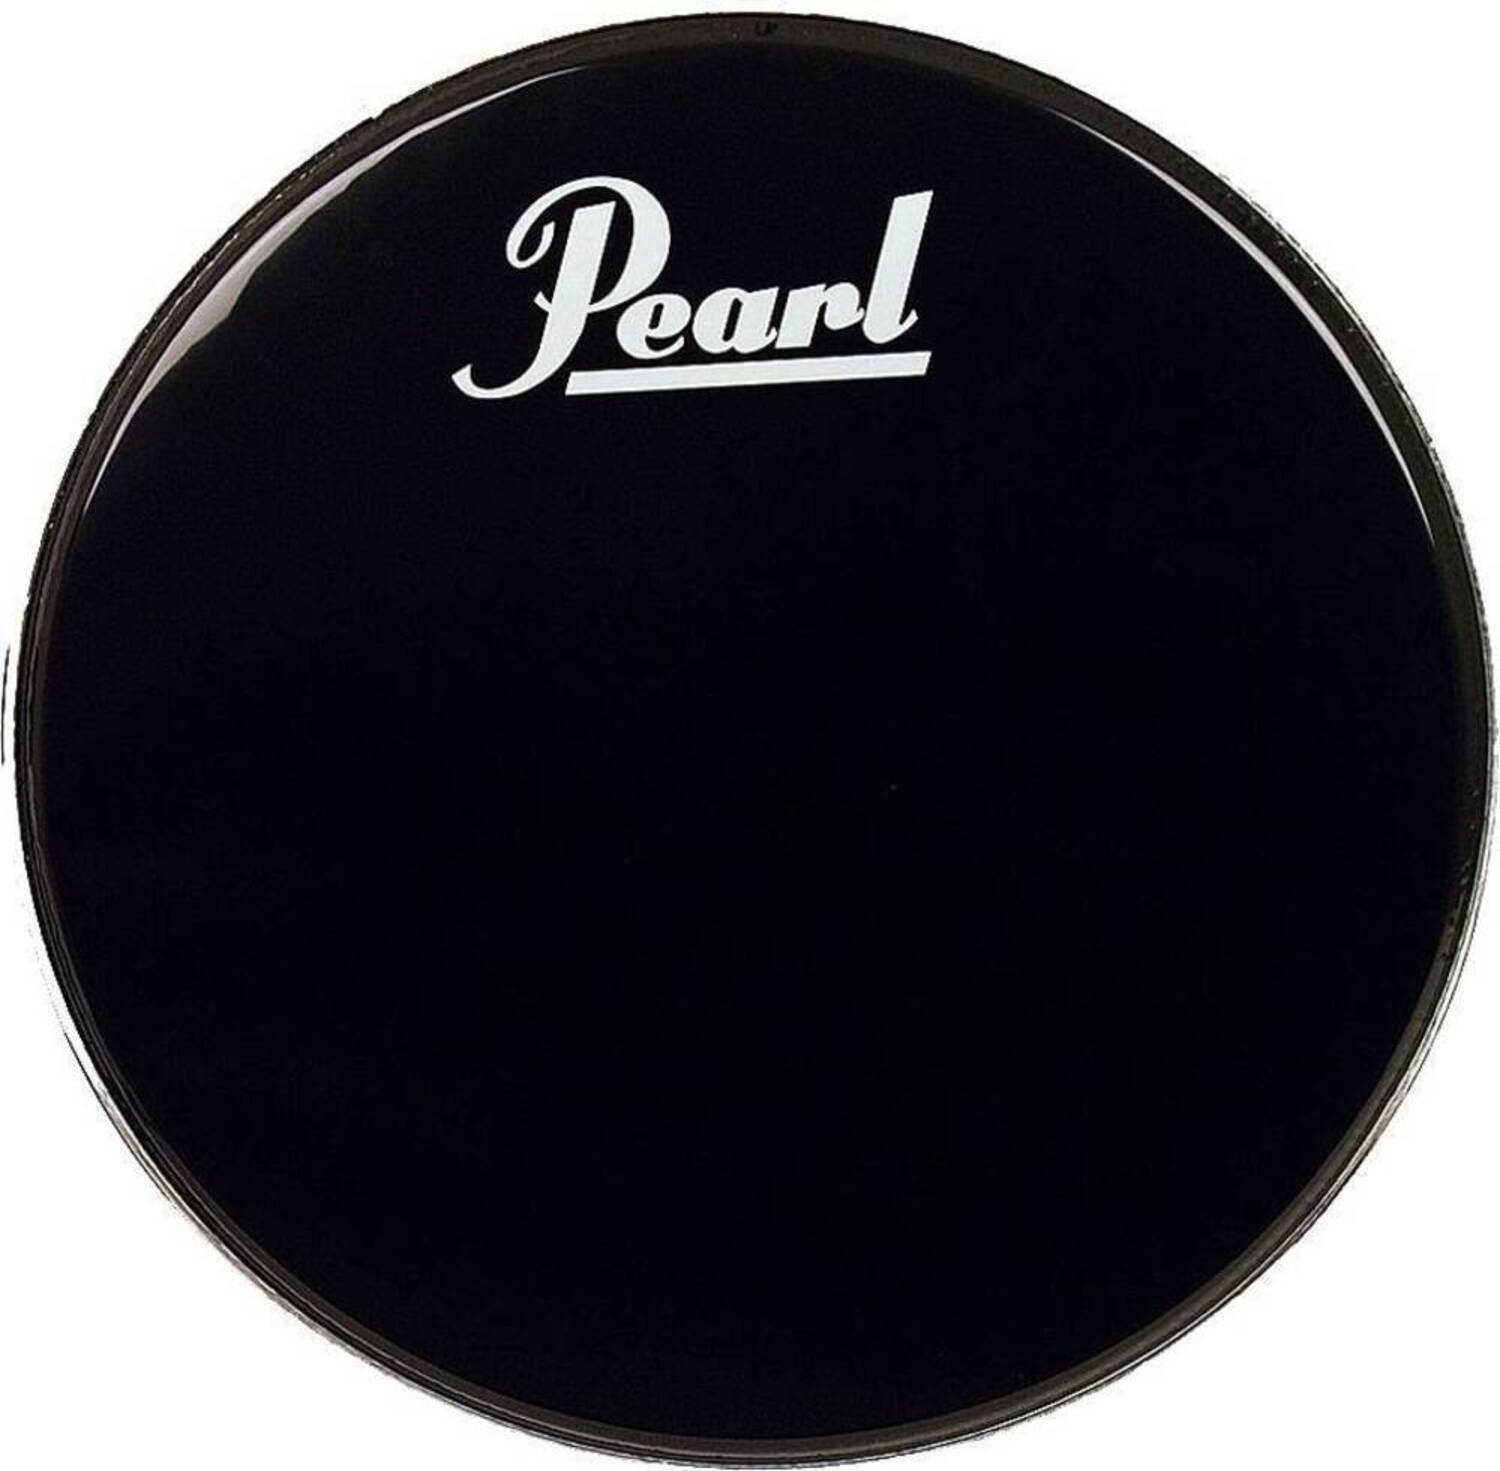 Прочие аксессуары для ударных инструментов Pearl EB-24BDPL прочие аксессуары для ударных инструментов pearl pbl 10